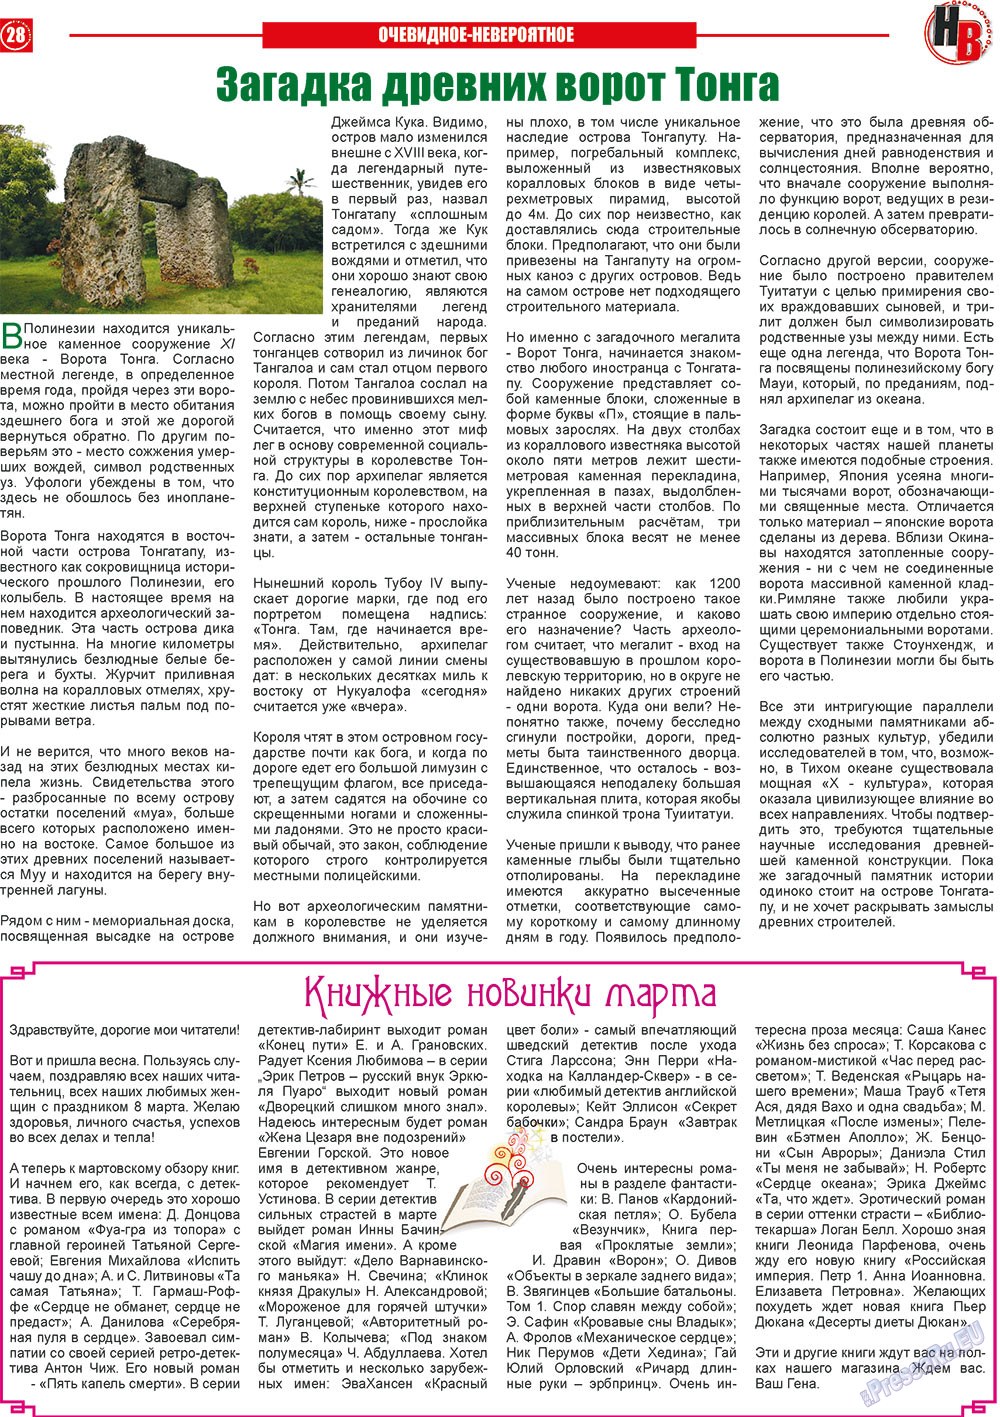 Nasche wremja (Zeitung). 2013 Jahr, Ausgabe 3, Seite 28